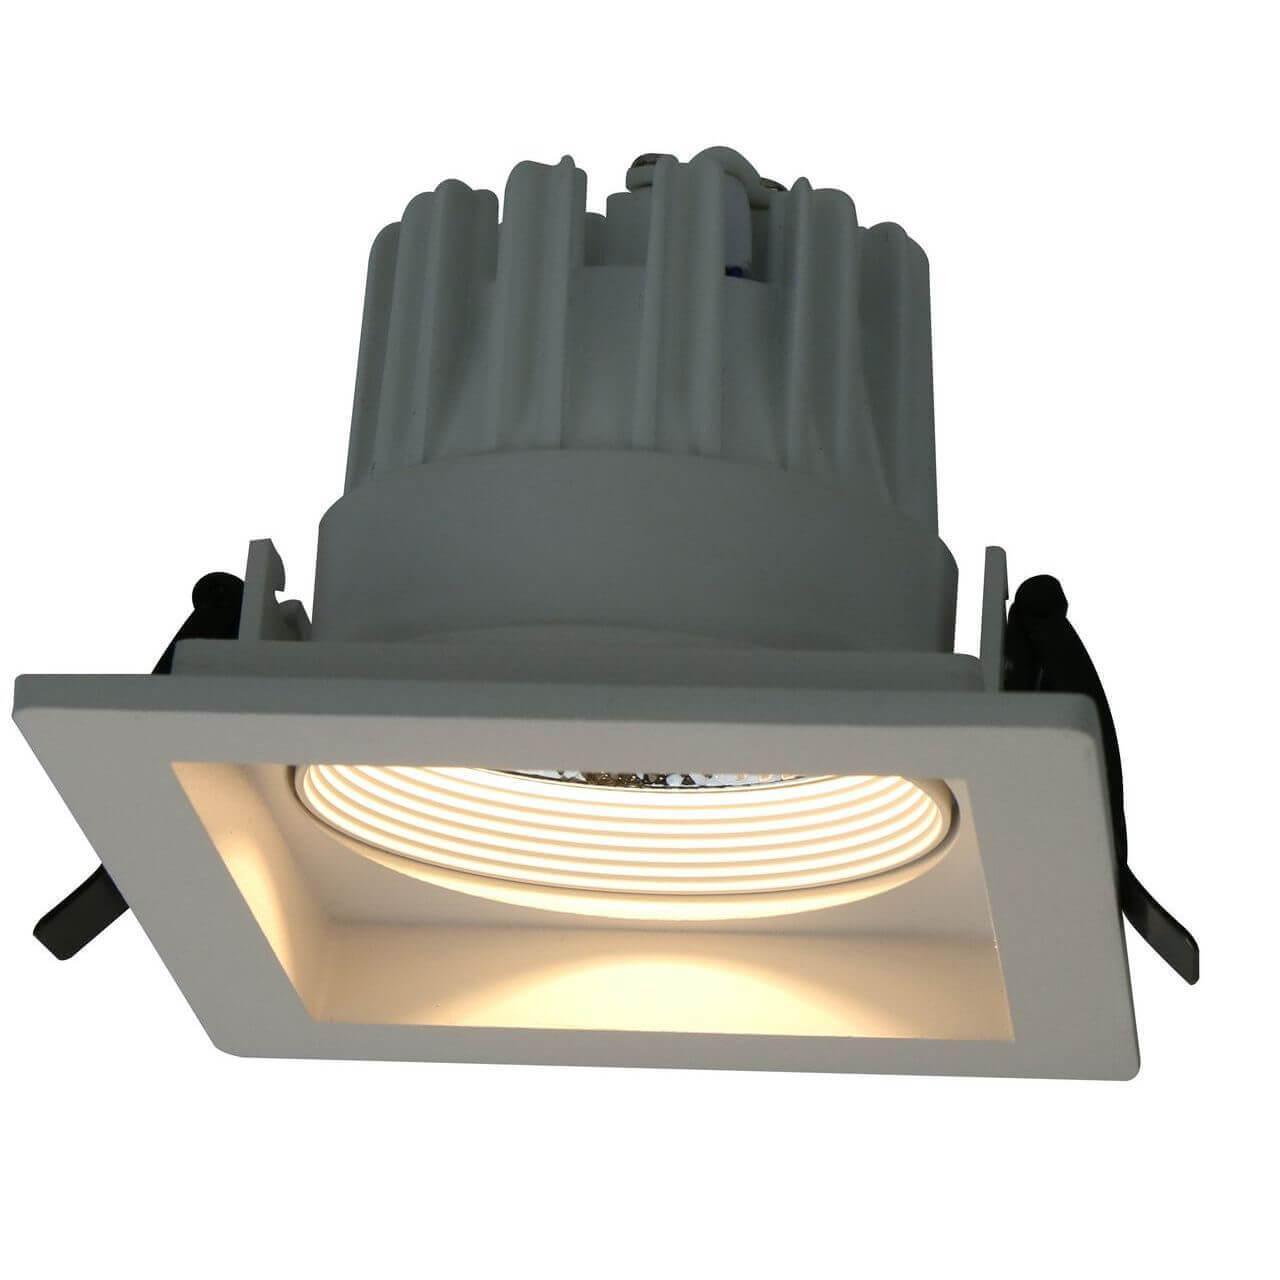 Встраиваемый светодиодный светильник Arte Lamp Privato A7018PL-1WH